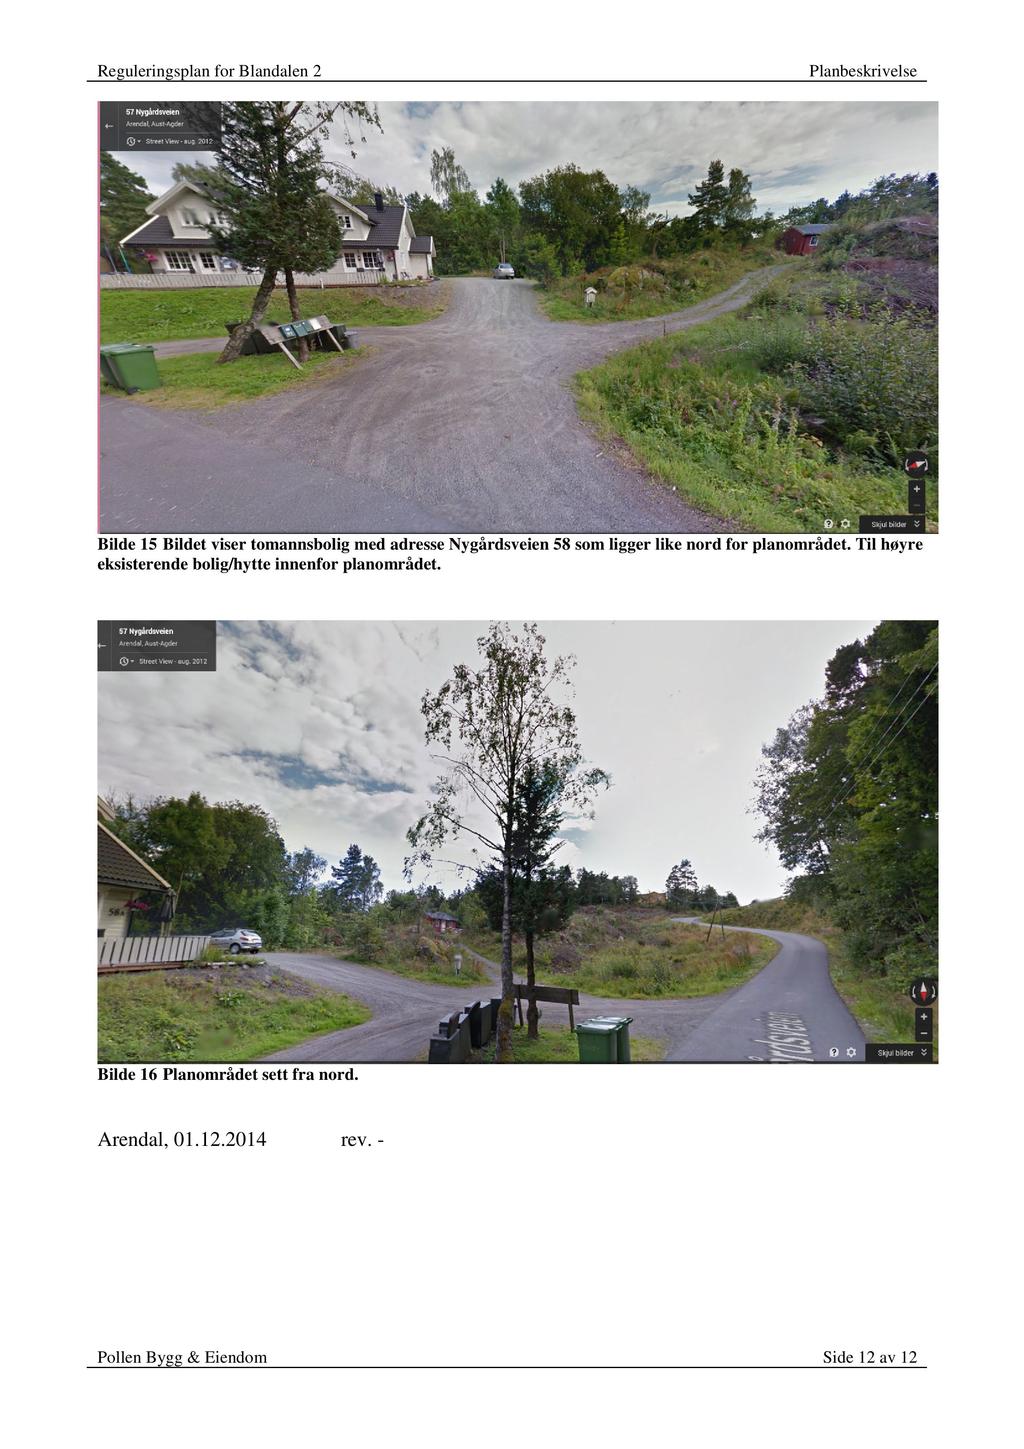 Bilde 15 Bildet viser tomannsboligmed adressenygårdsveien58 somligger like nord for planområdet.